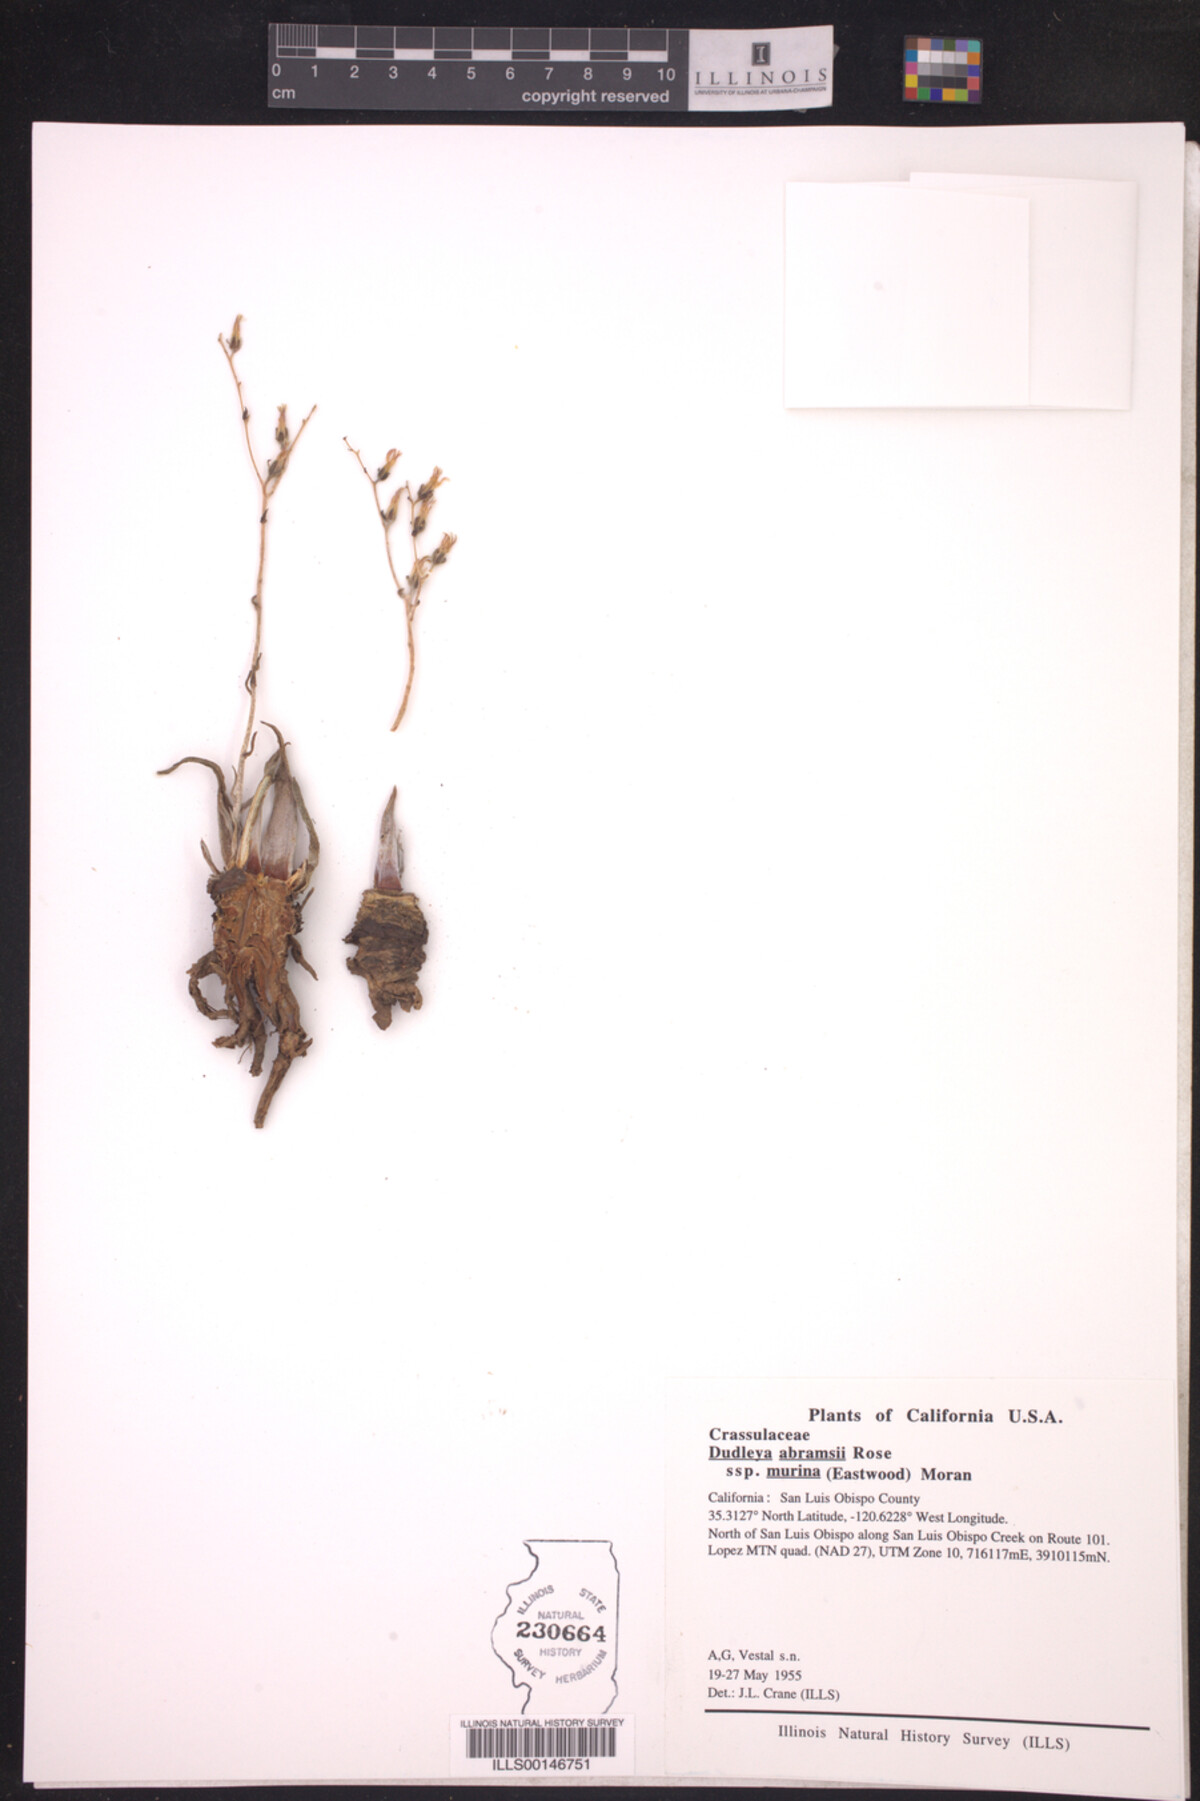 Dudleya abramsii ssp. murina image